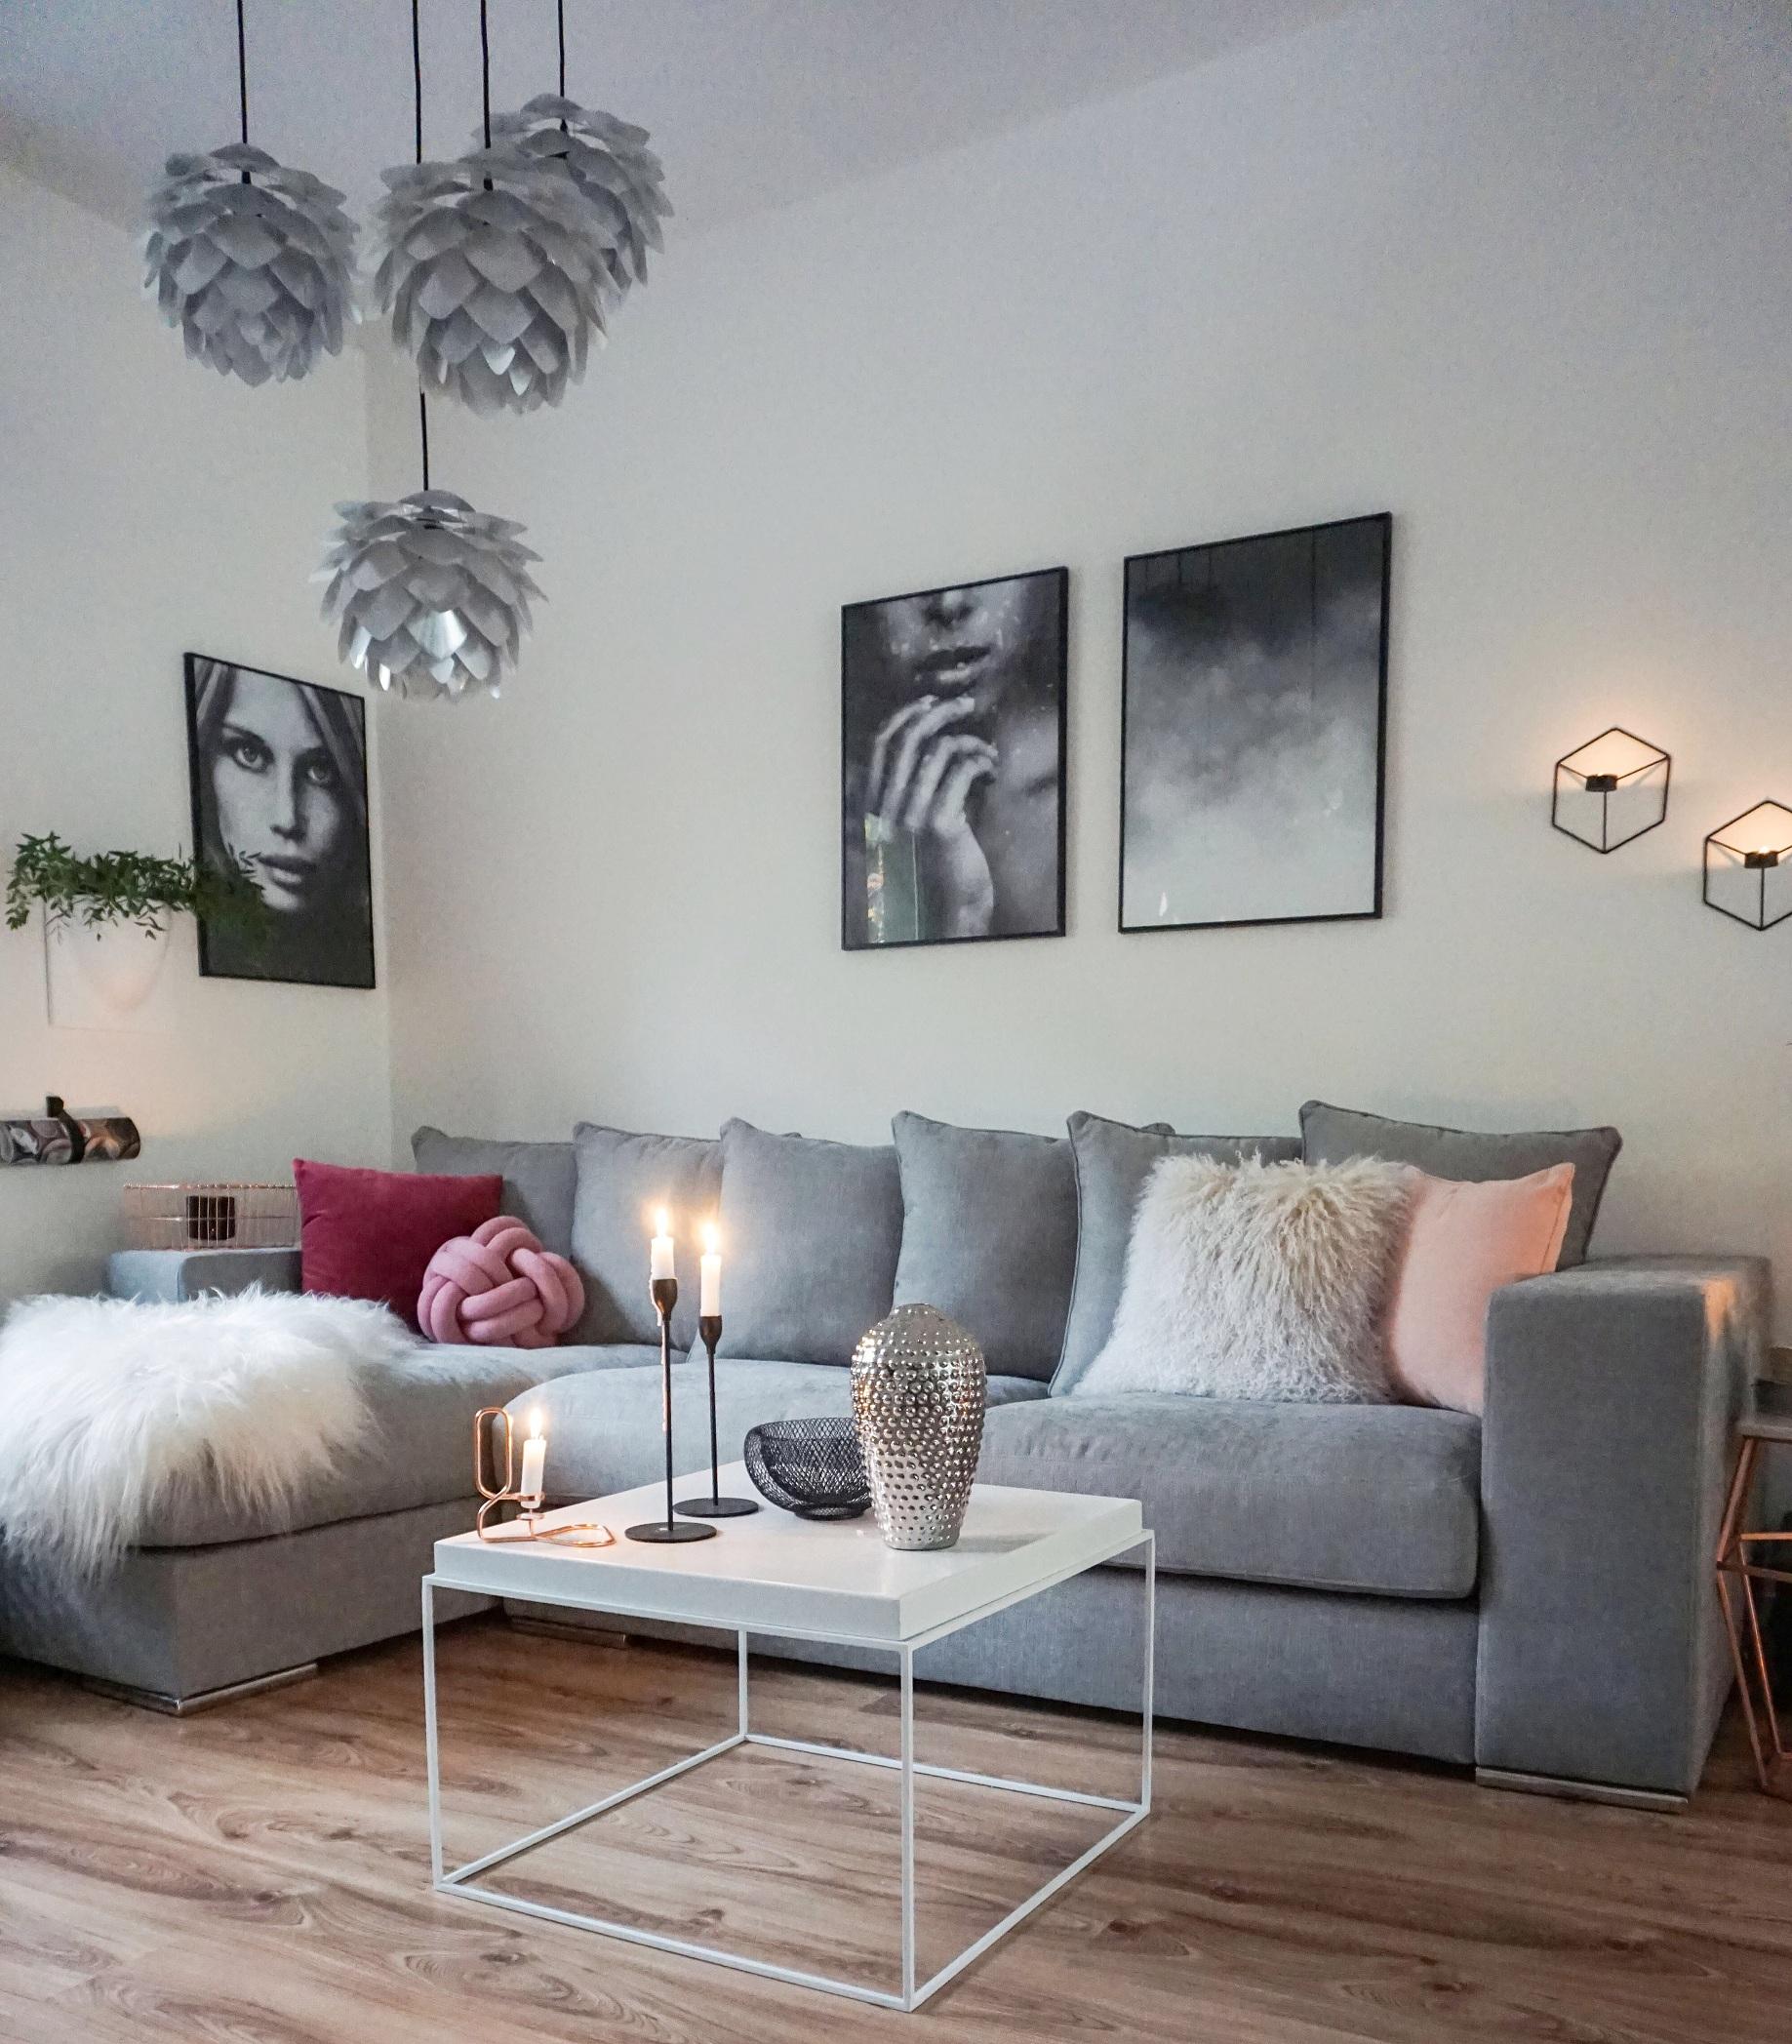 Sofa 'Newman' im Wohnzimmer der Bloggerin easyinterieur #wohnzimmer #ecksofa #sofa ©Amaris Elements